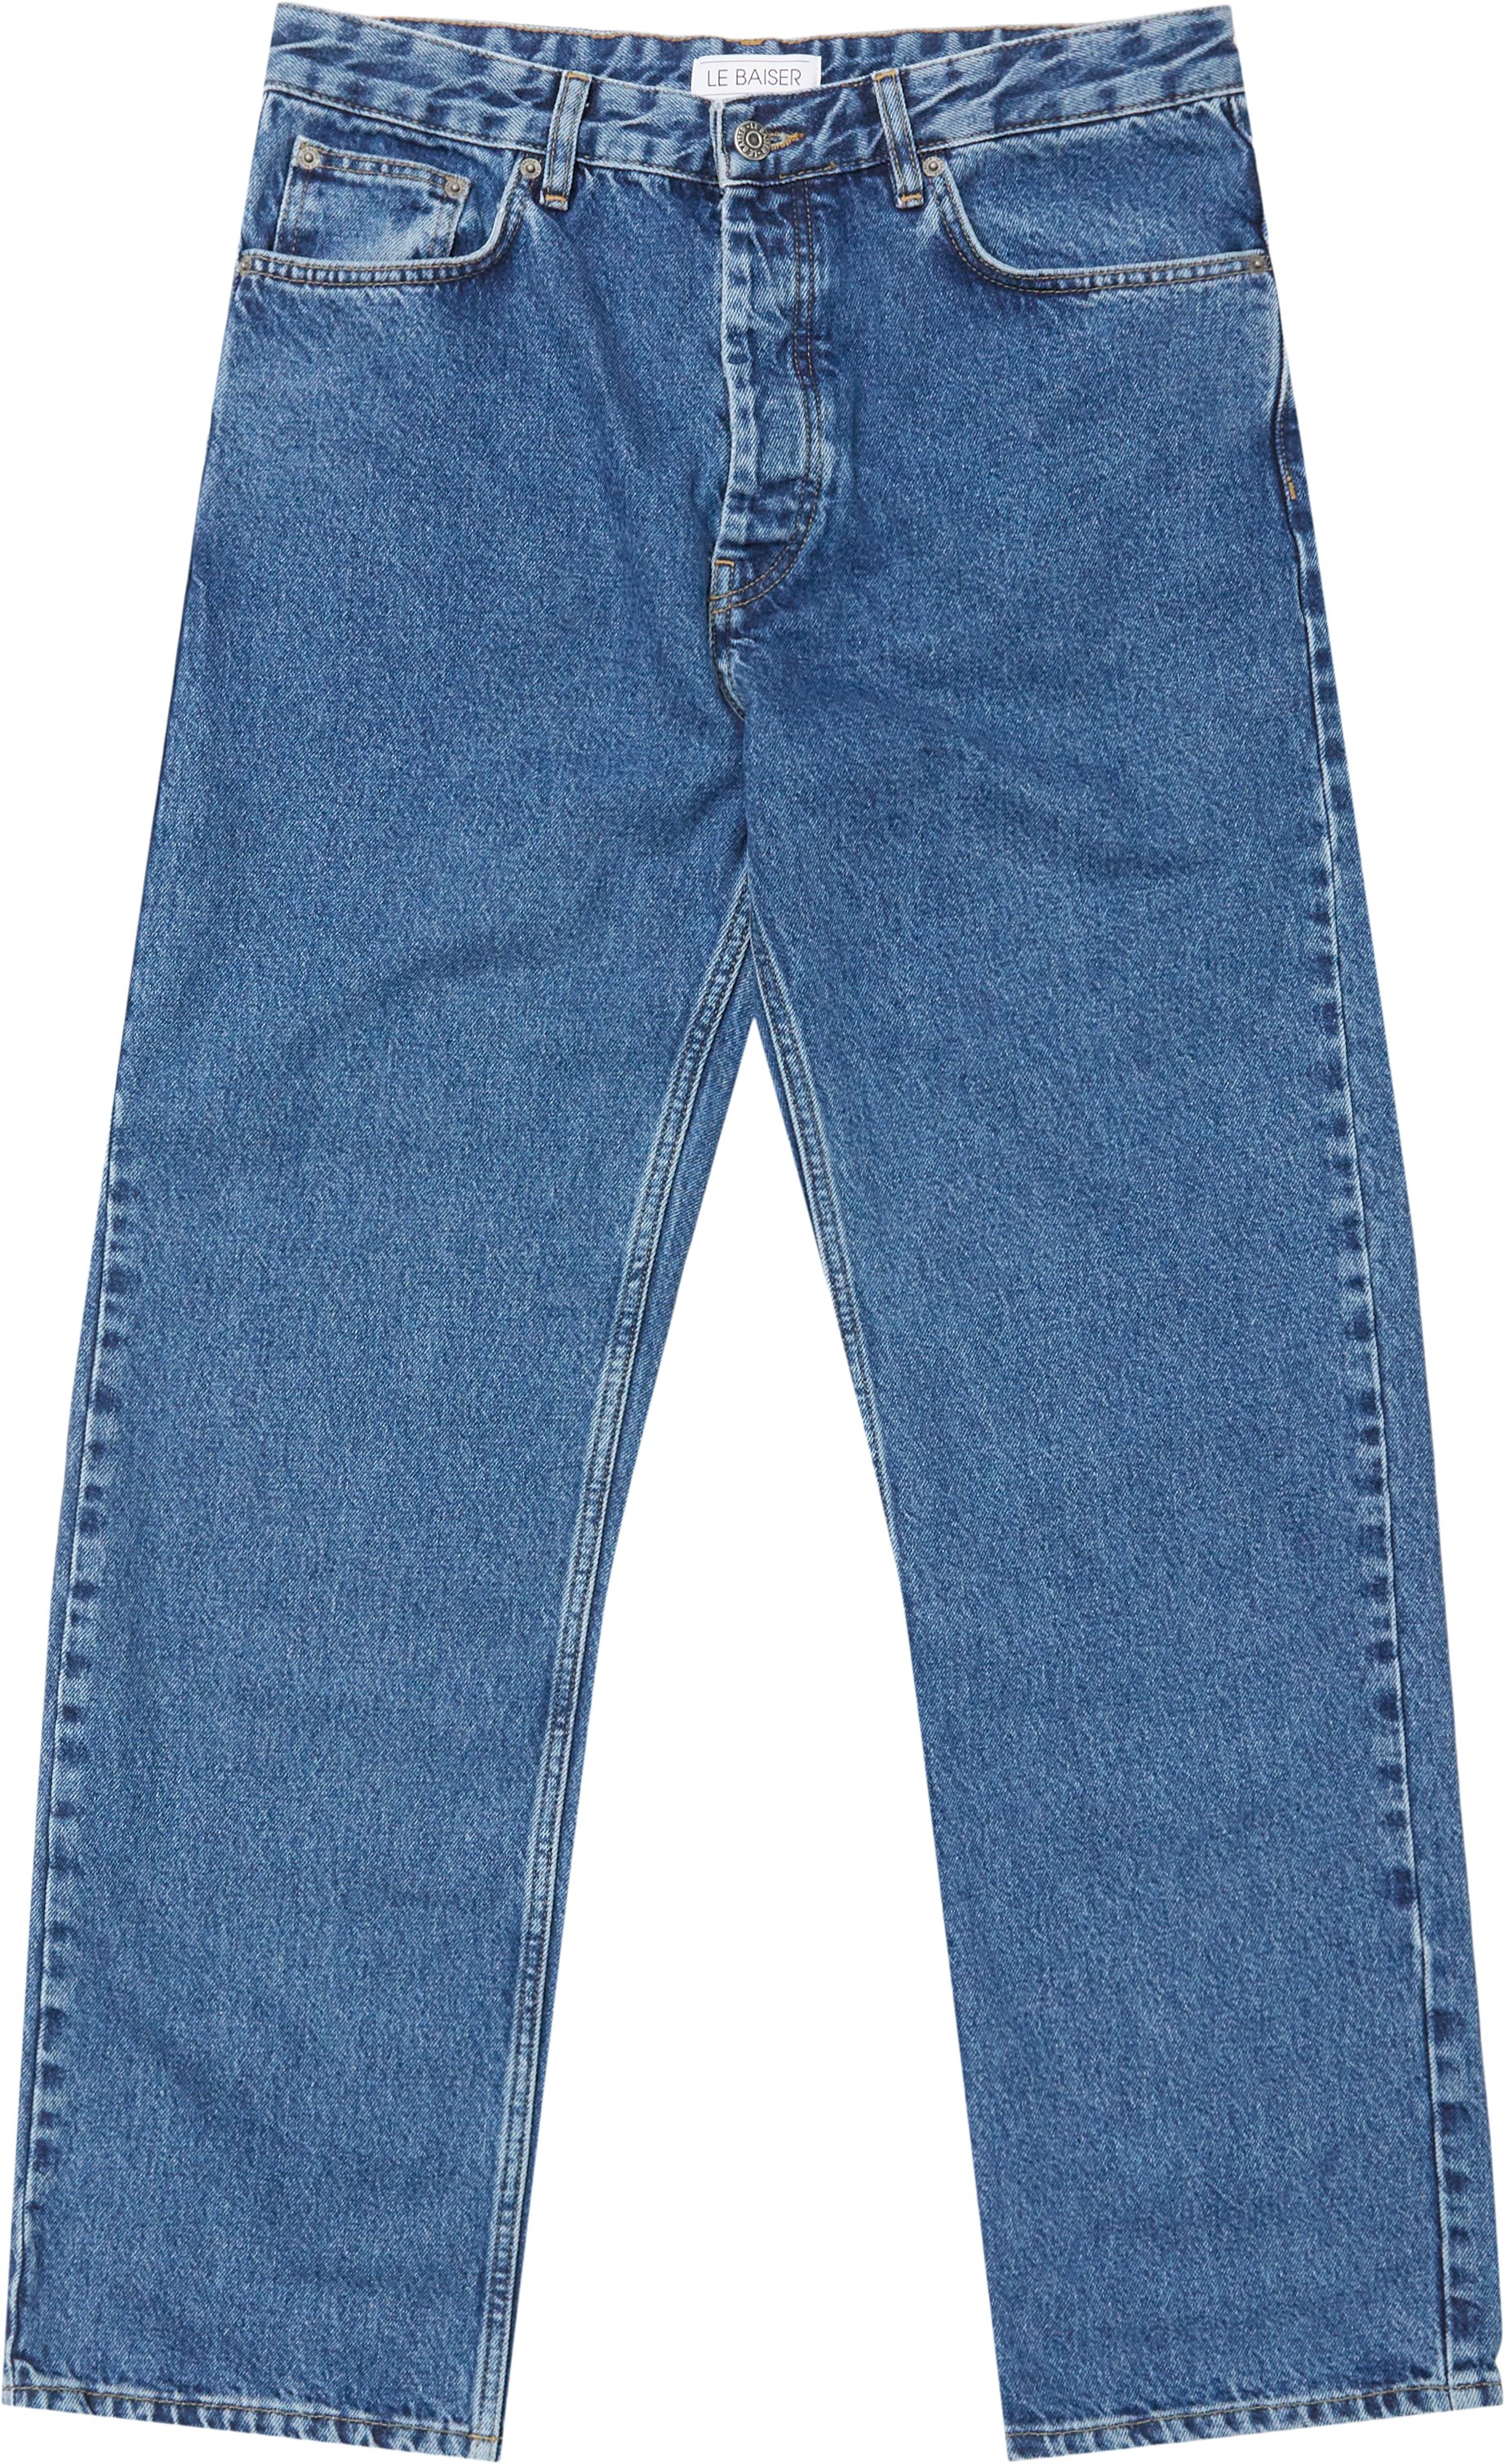 Colmar Stone Blue Jeans - Jeans - Loose fit - Denim